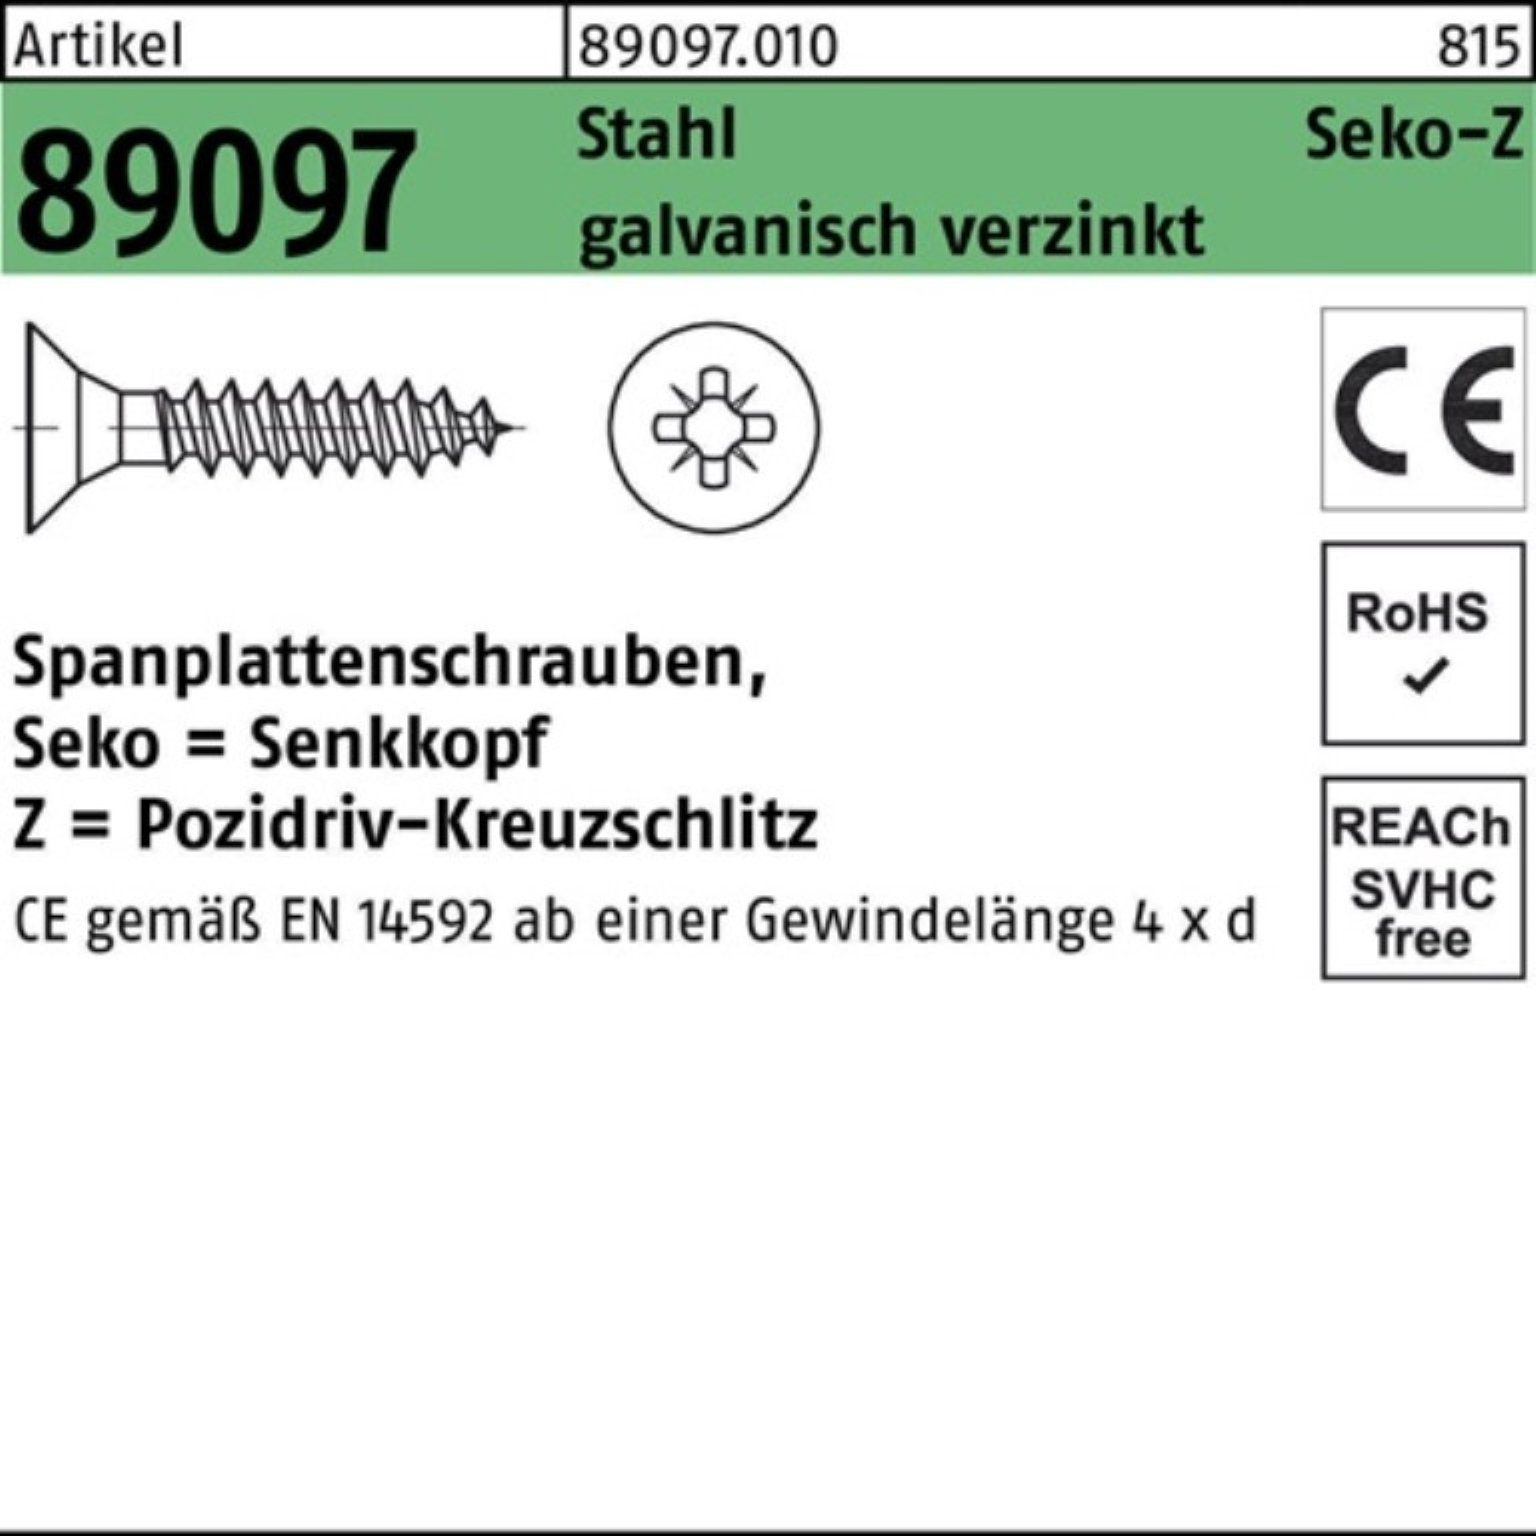 Reyher Spanplattenschraube 500er Pack 5x50-Z R galv.ve VG 89097 Stahl PZ SEKO Spanplattenschraube